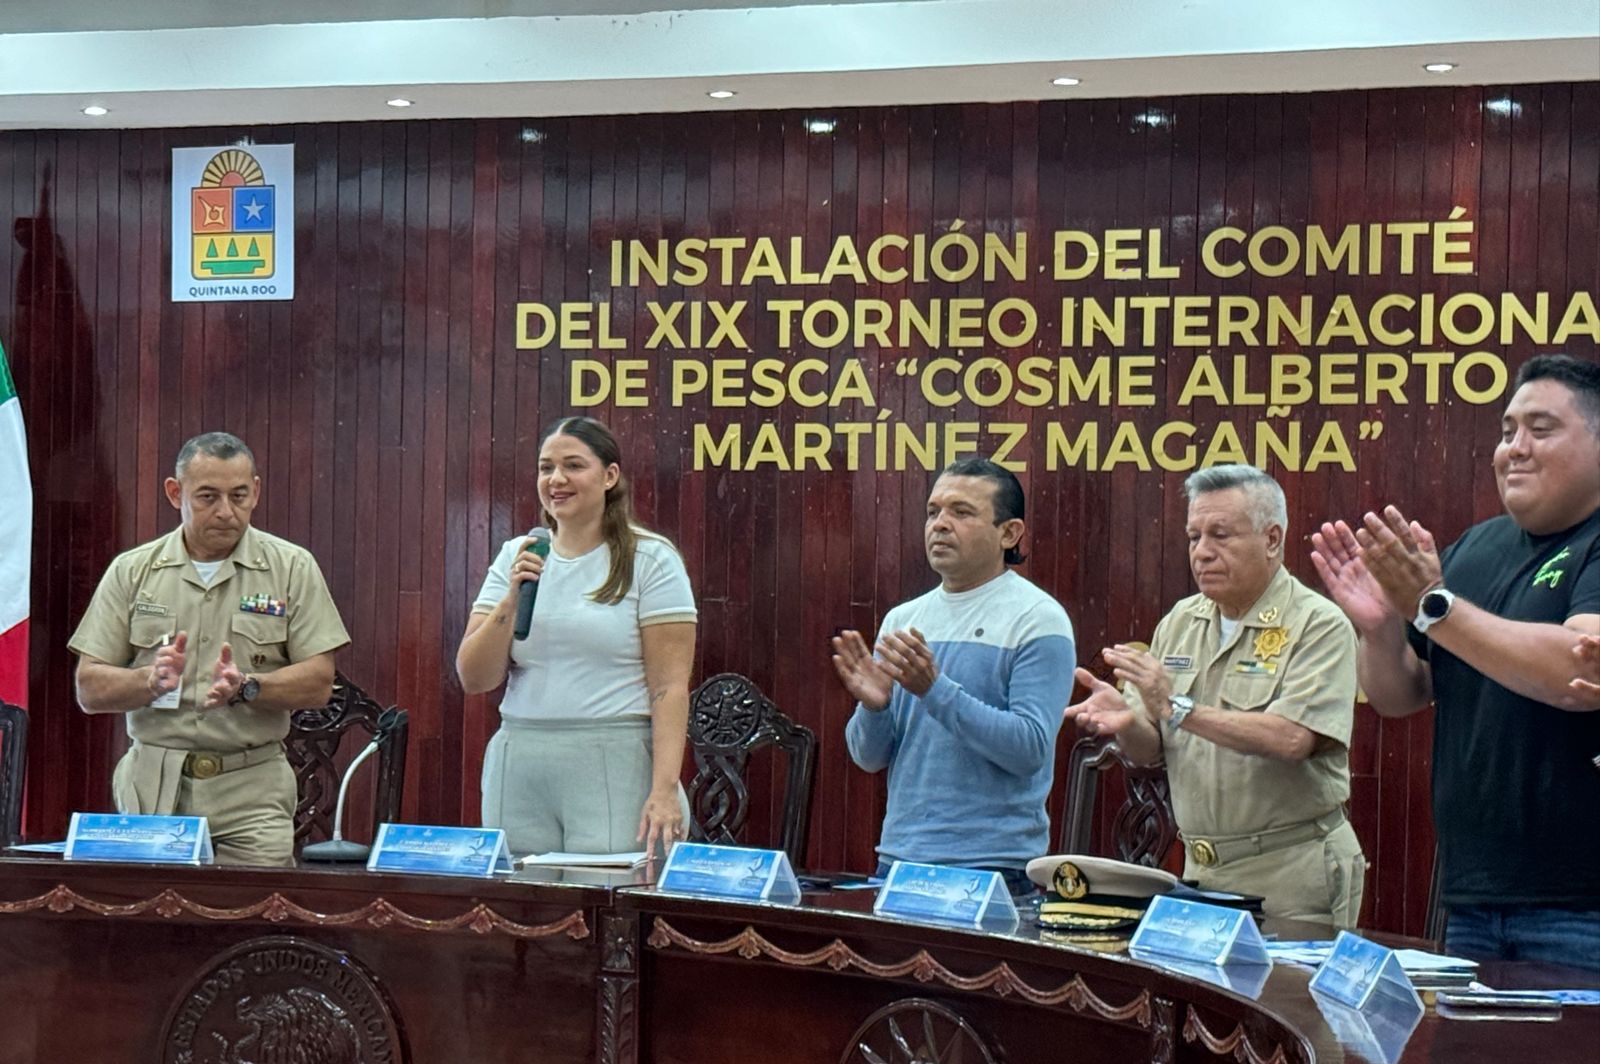 Instalación del Comité del XIX Torneo Internacional de Pesca “Cosme Alberto Martínez Magaña”